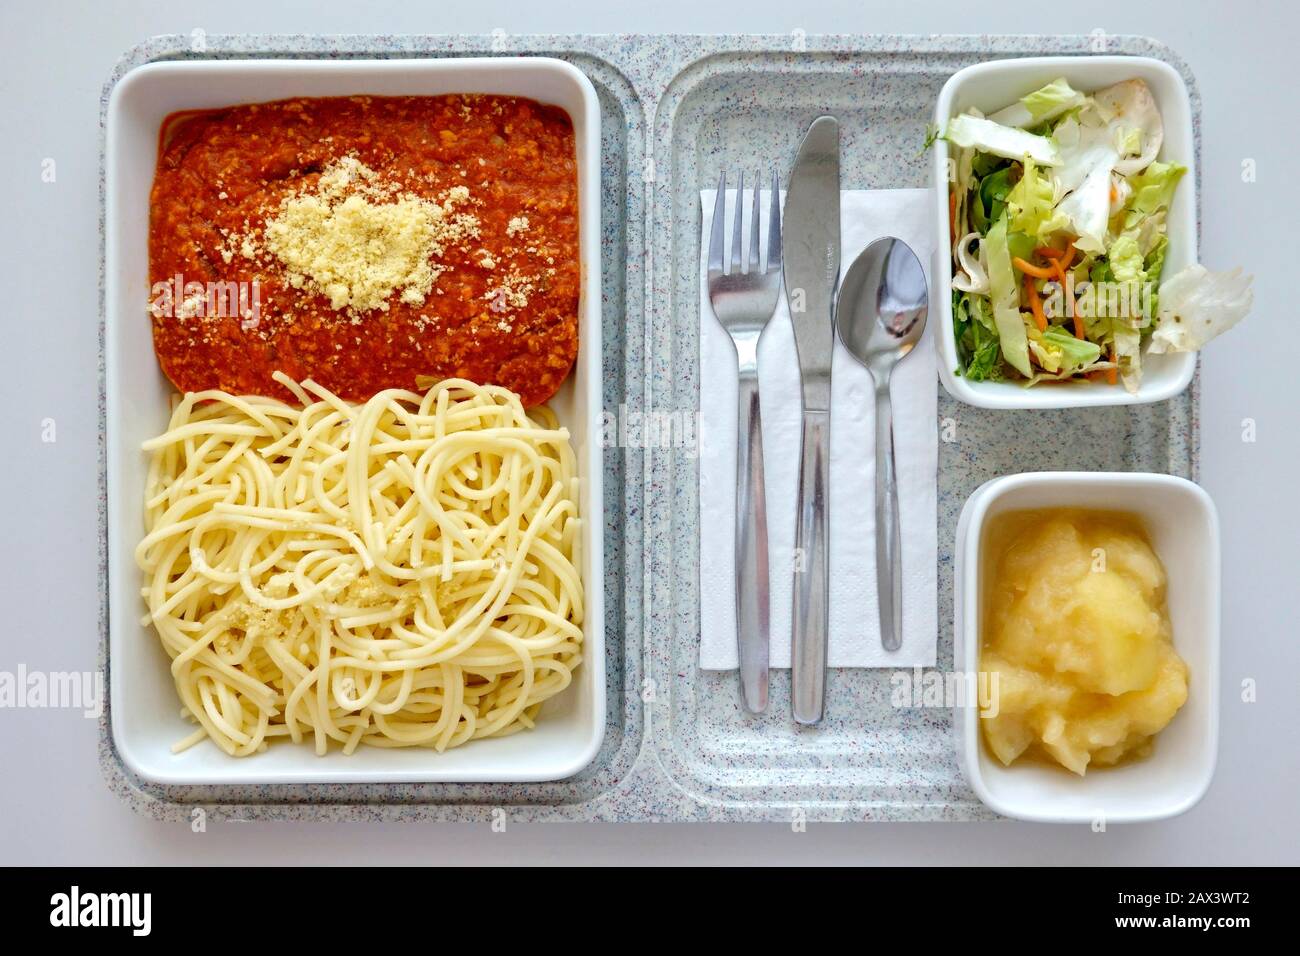 Repas prêt, déjeuner déficient à l'hôpital, spaghetti avec sauce bolognaise, parmesan, salade mixte, pommes compotées, Allemagne Banque D'Images